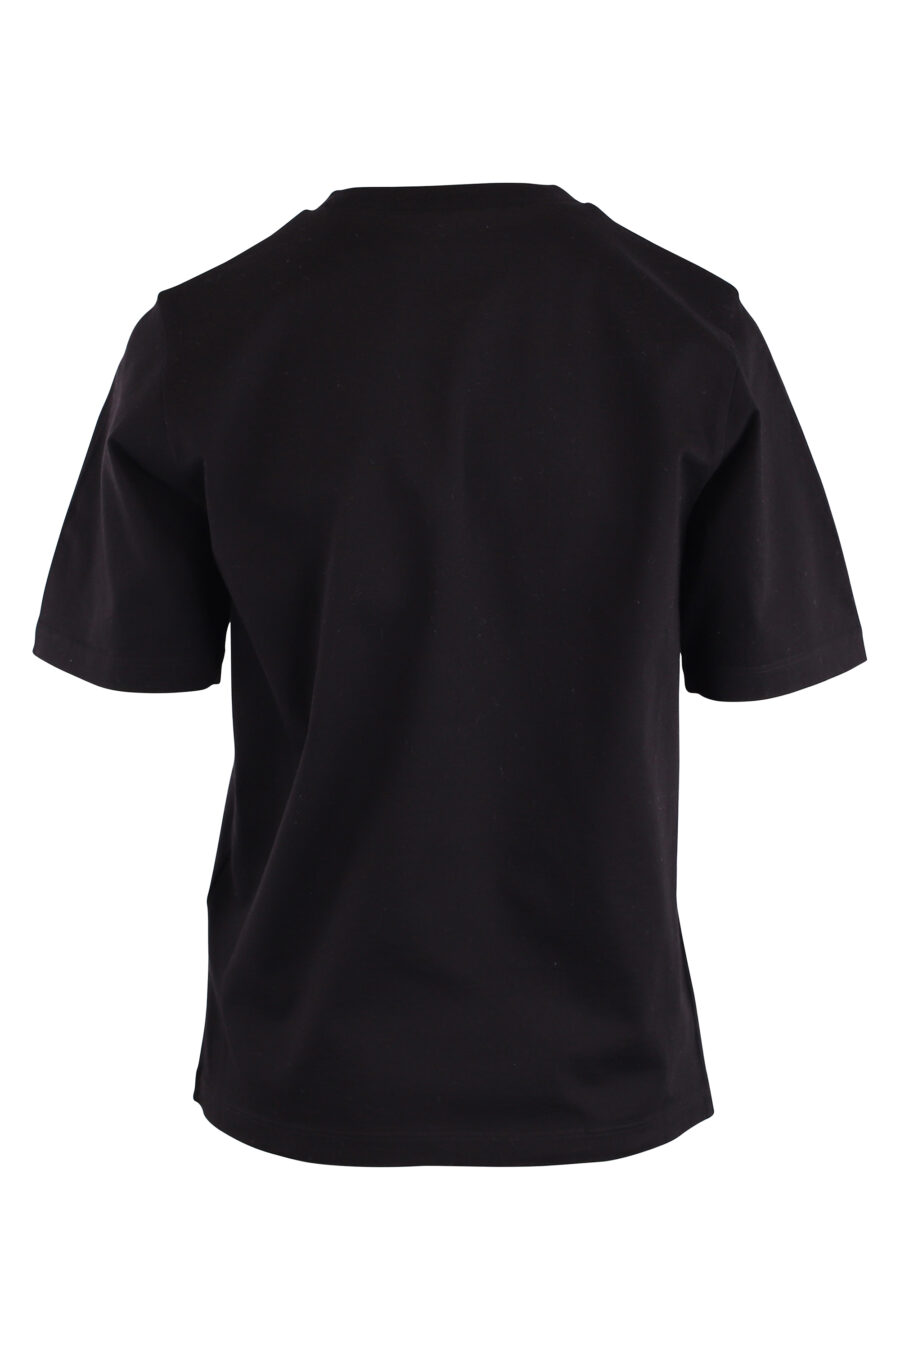 T-shirt preta com o logótipo "icon" e um cão surfista - IMG 9127